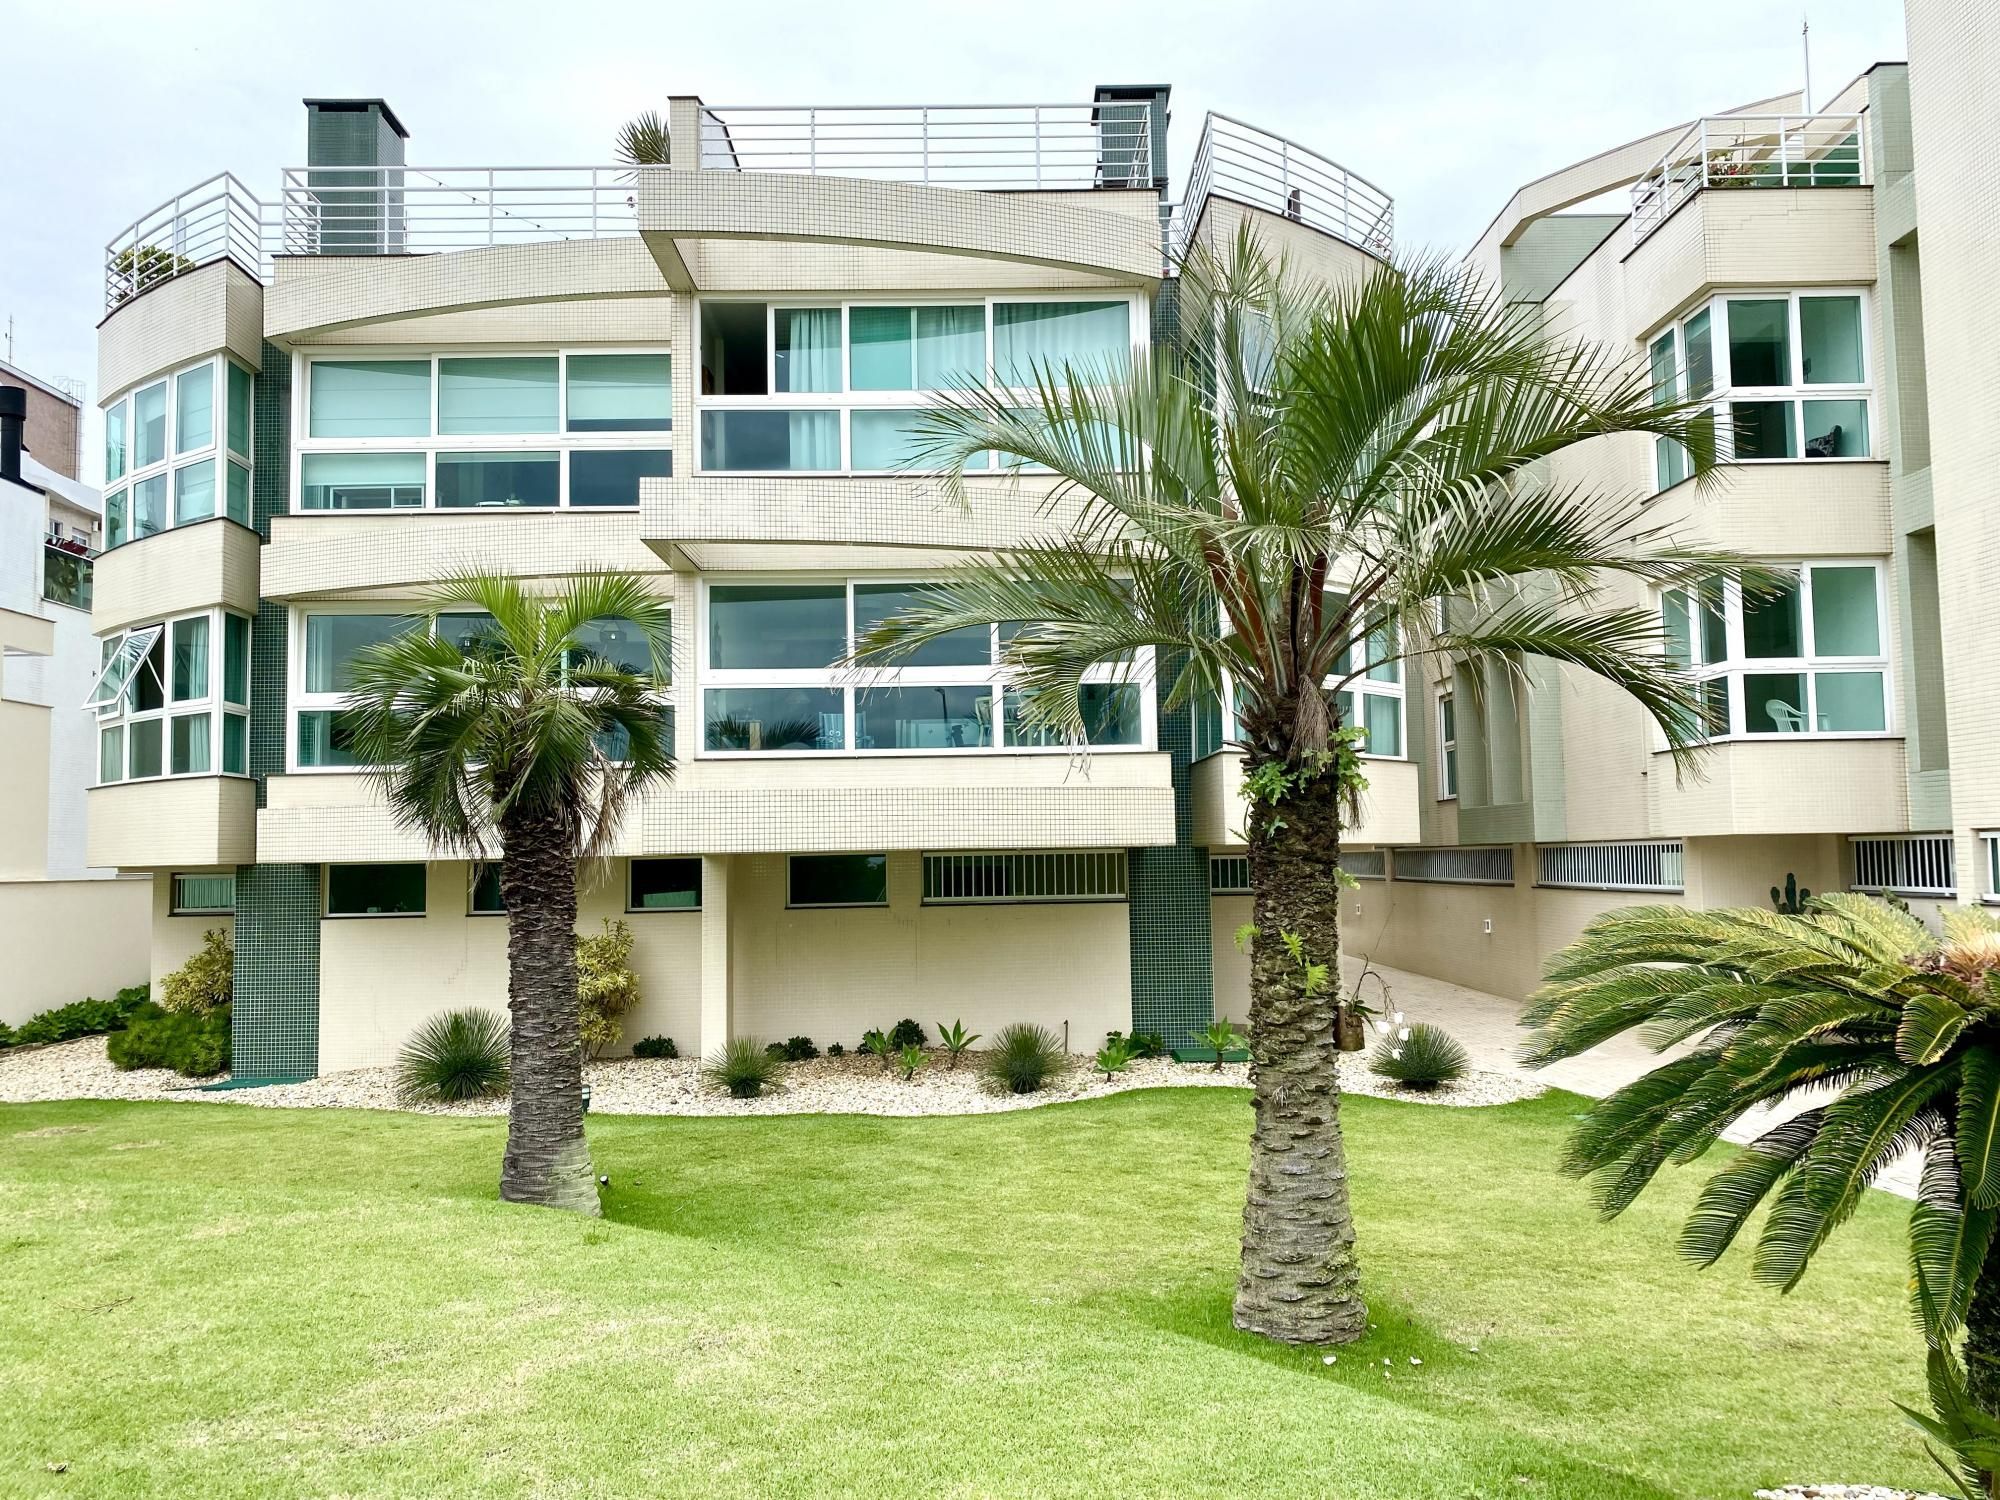 Apartamento com 3 Dormitórios à venda, 200 m² por R$ 2.800.000,00